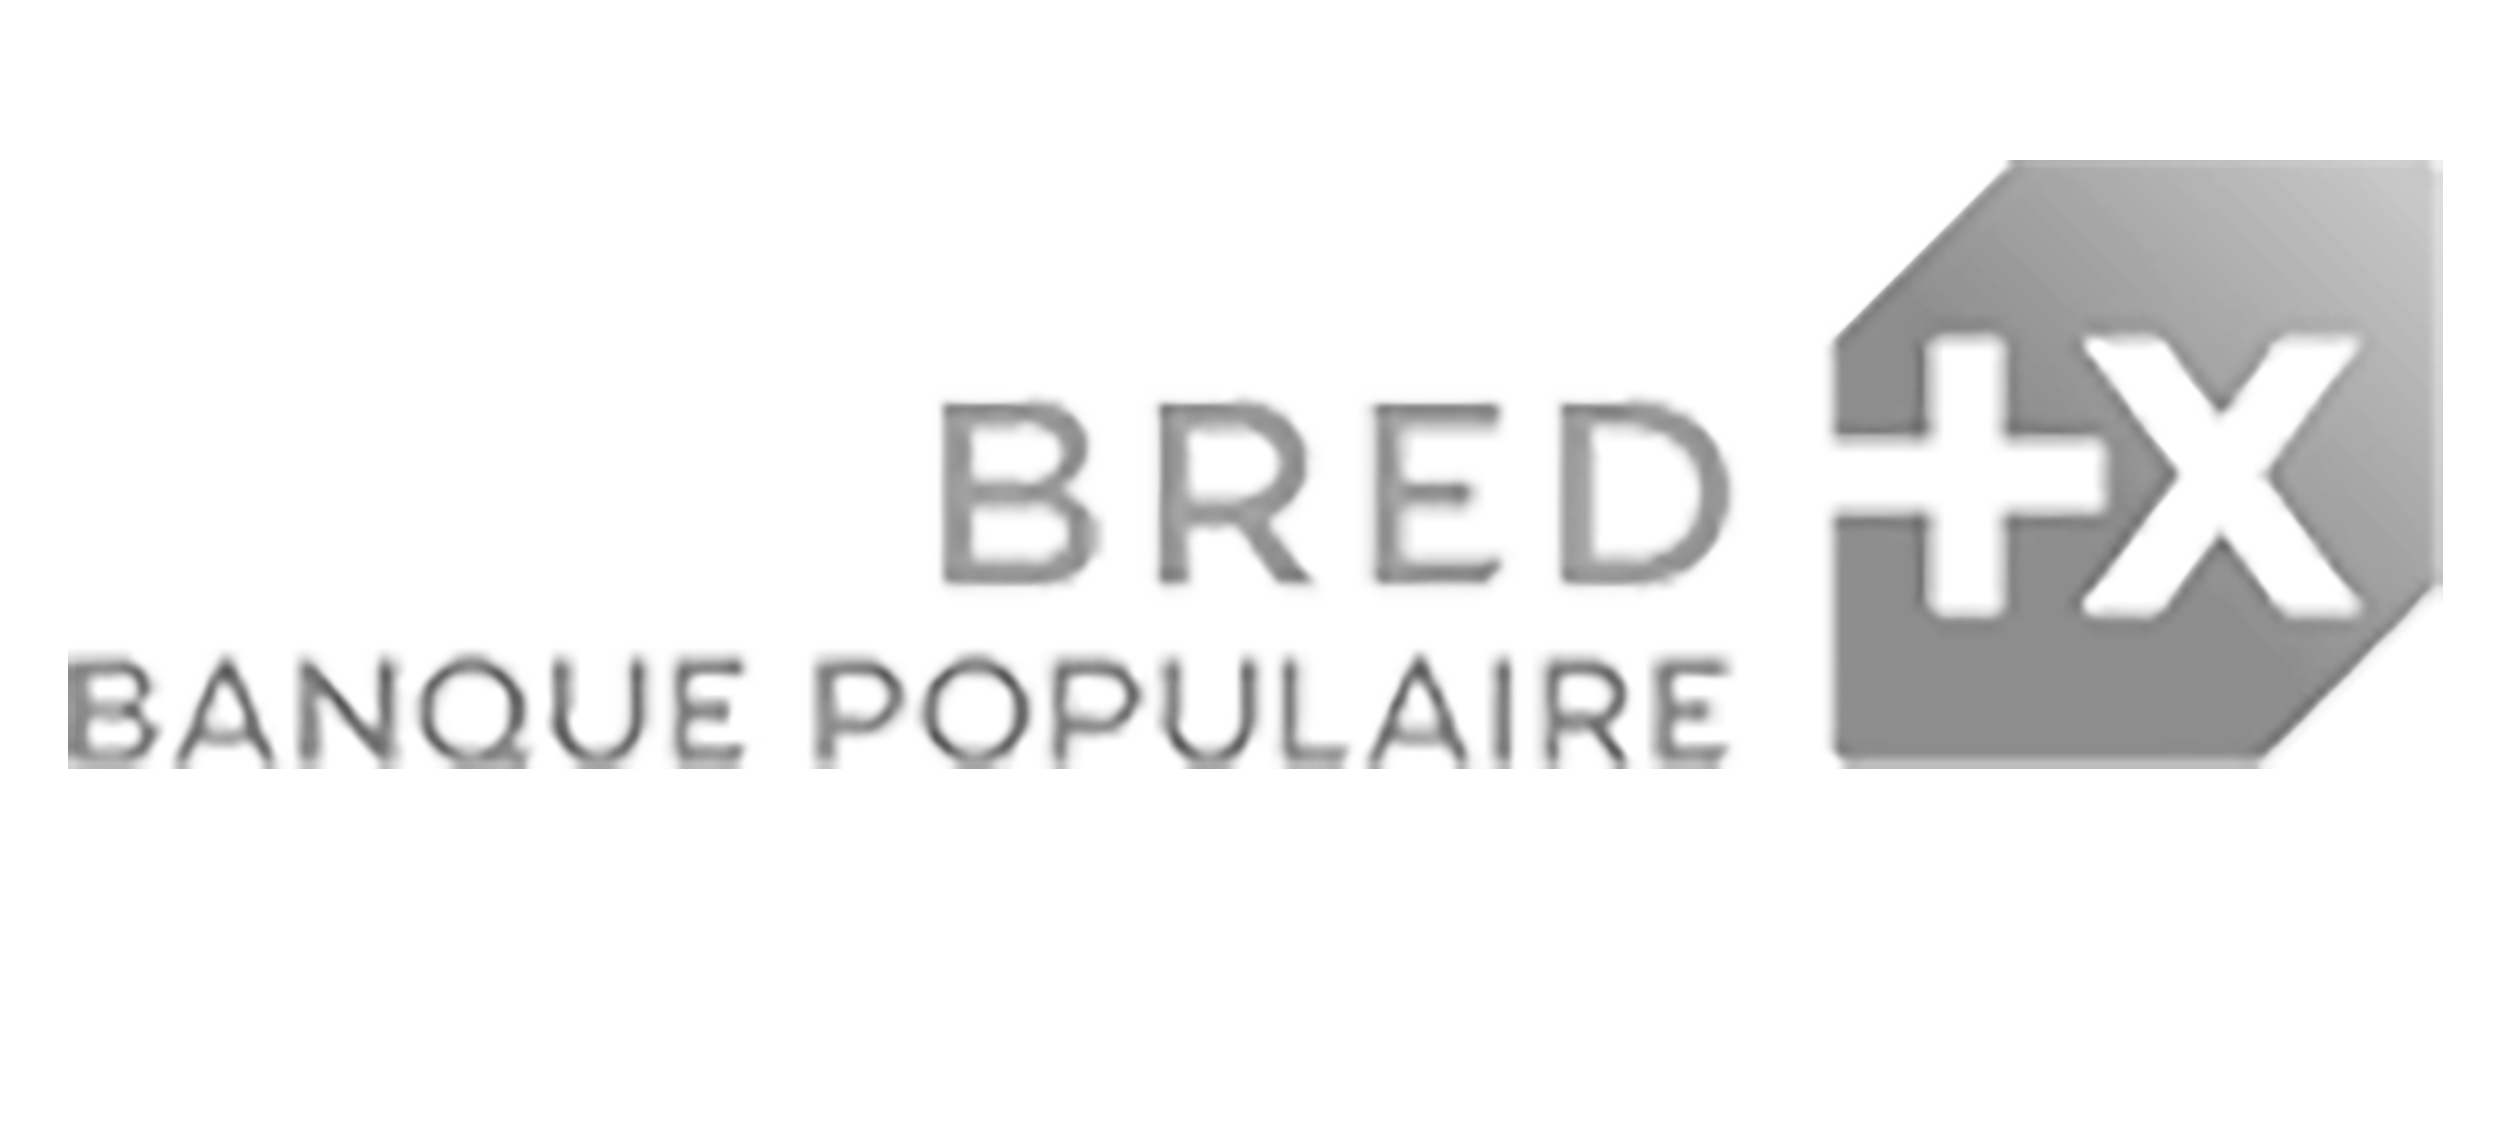 Logo de la Bred Banque Populaire. Groupe Silam agence événementielle à Rouen.